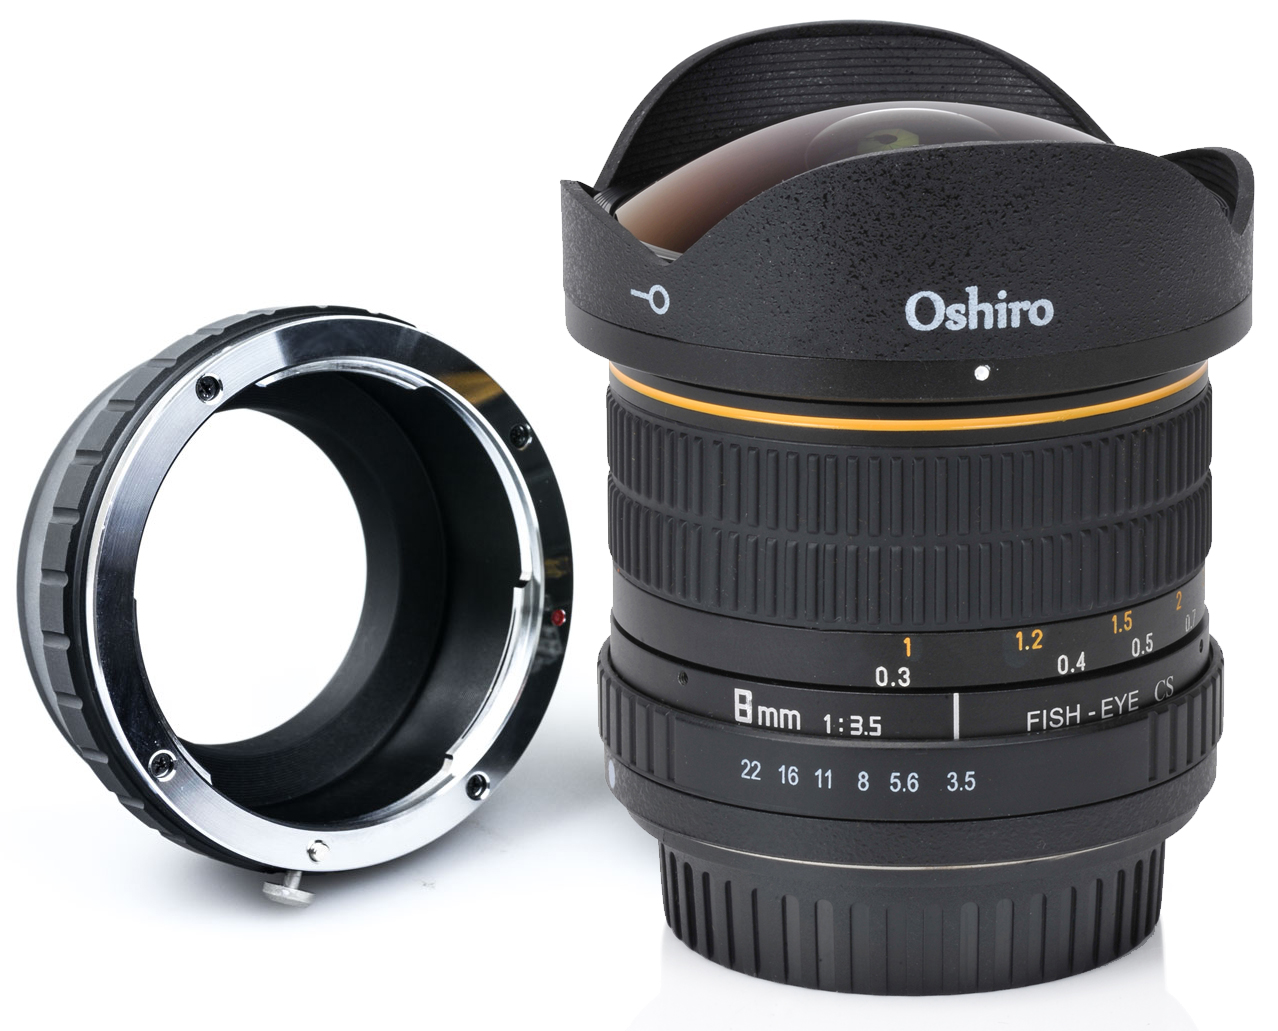 Oshiro 8mm f/3.5 LD UNC AL Wide Angle Fisheye Lens for Olympus PEN E-M1, E-M5, E-M10, E-PL7, E-P5, E-PL5, E-PM2, E-P1, E-P2, E-PL1, E-PL1s, PL2 Micro Four Thirds Mirrorless Digital Cameras - image 1 of 7